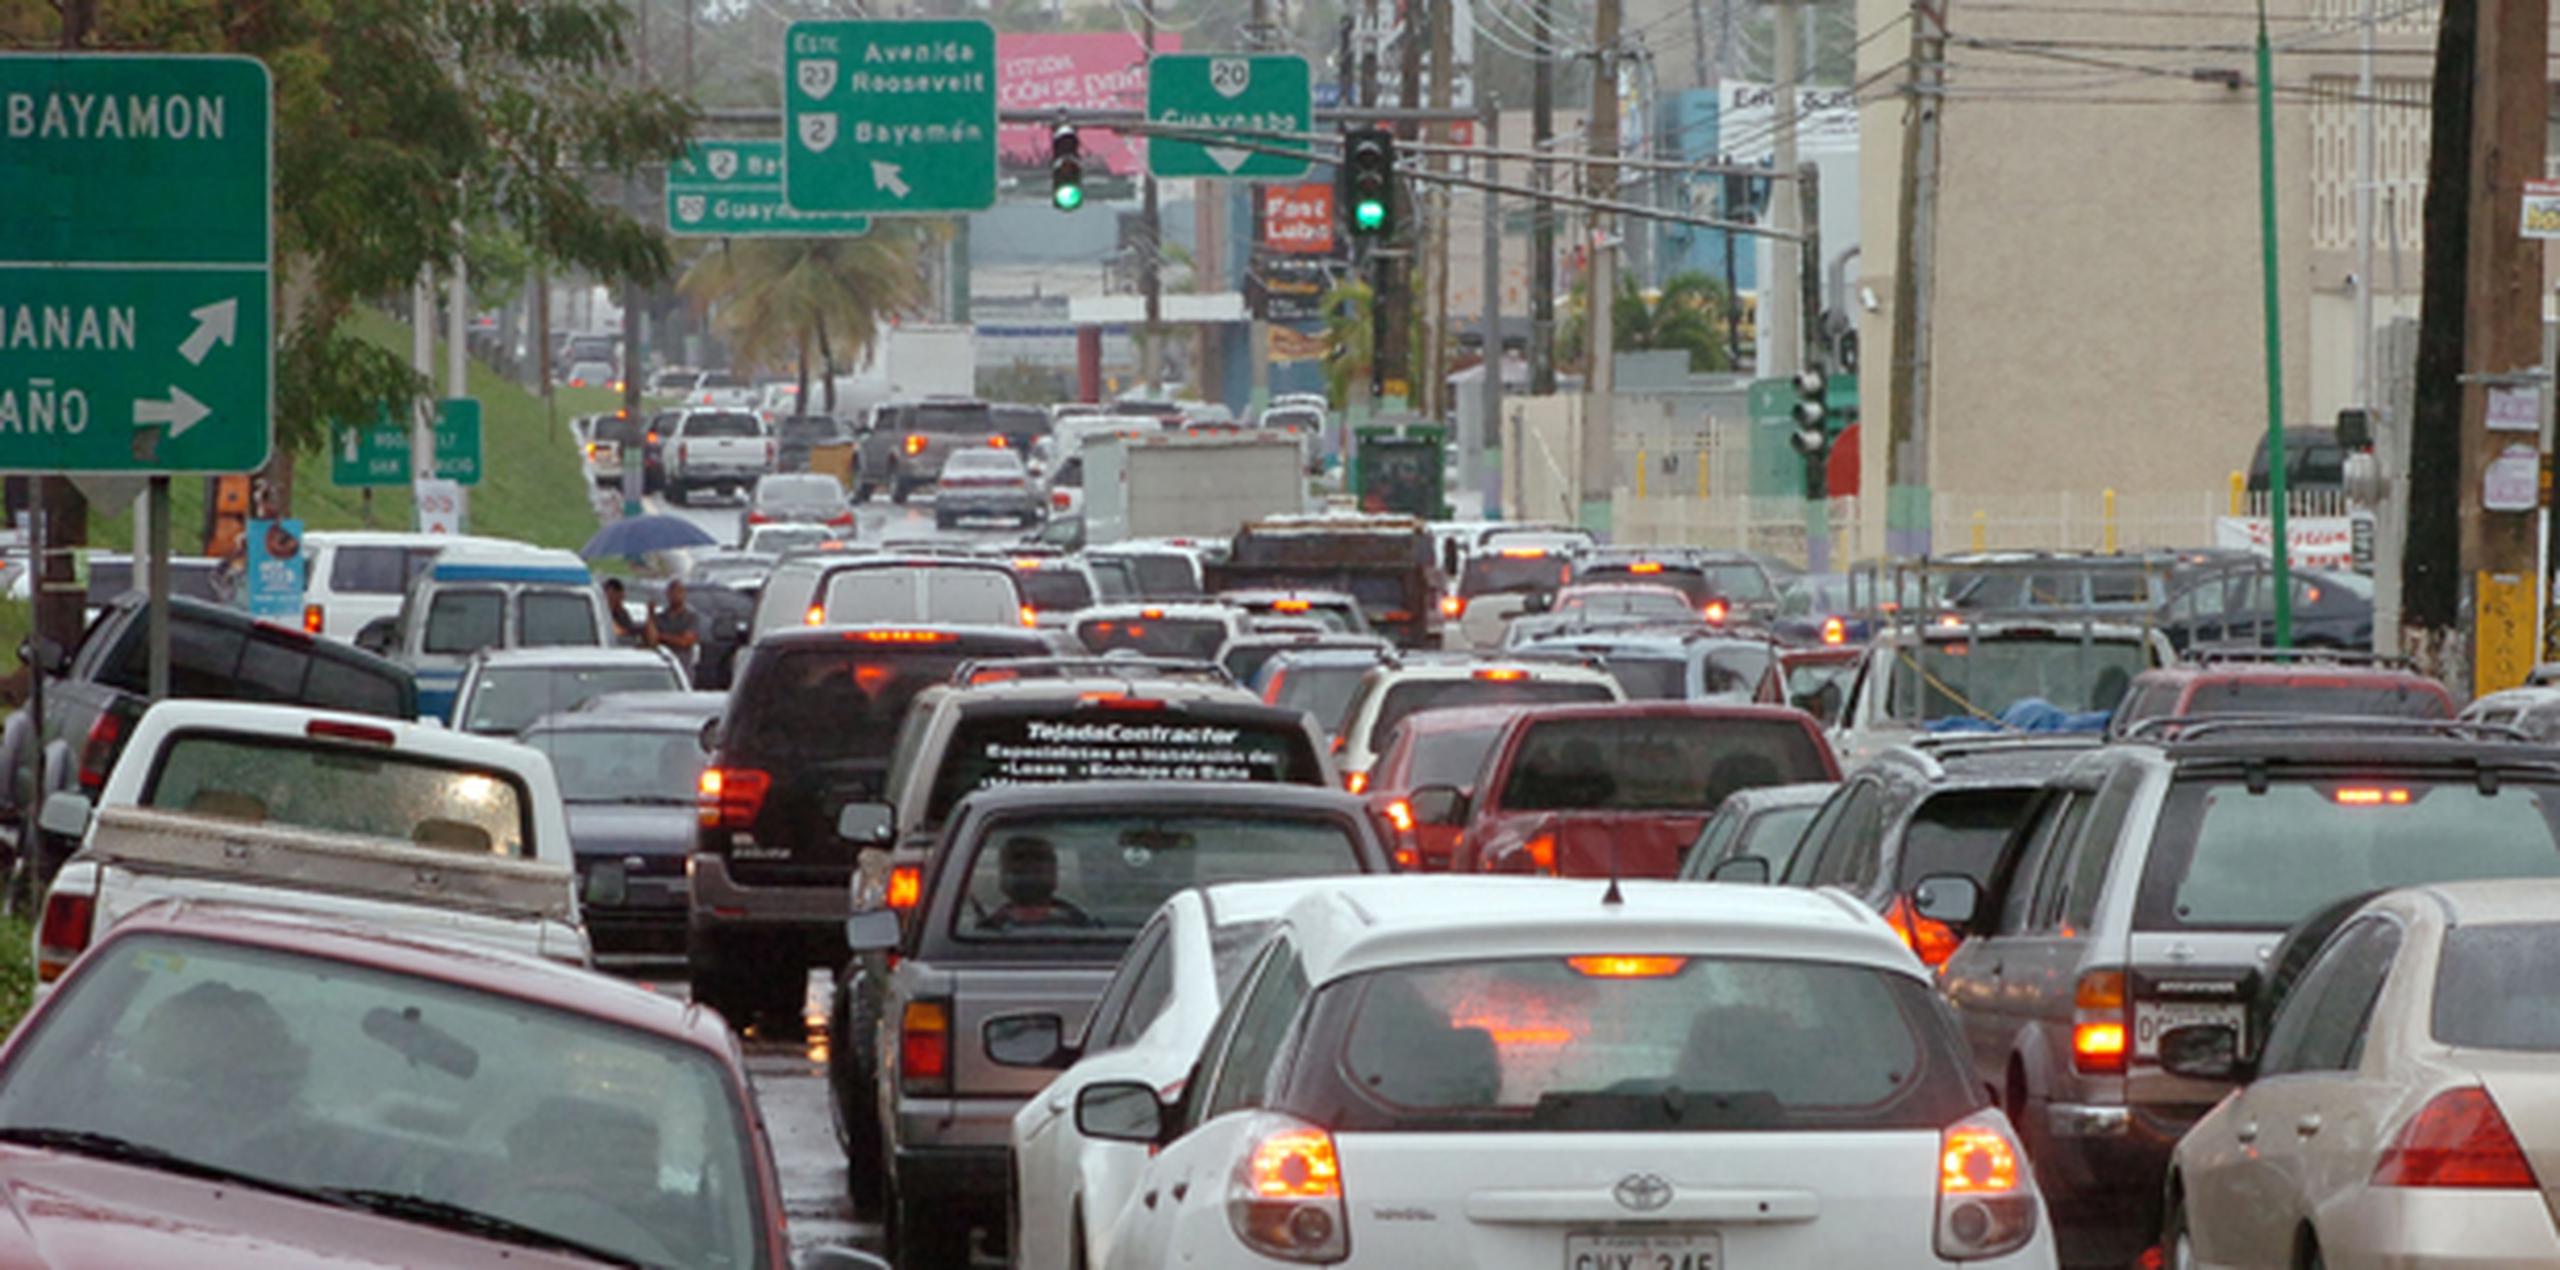 Carolina: Tránsito liviano en la Ave PR 8 en ruta hacia San Juan.  Precaución con semáforos averiados. (Archivo)